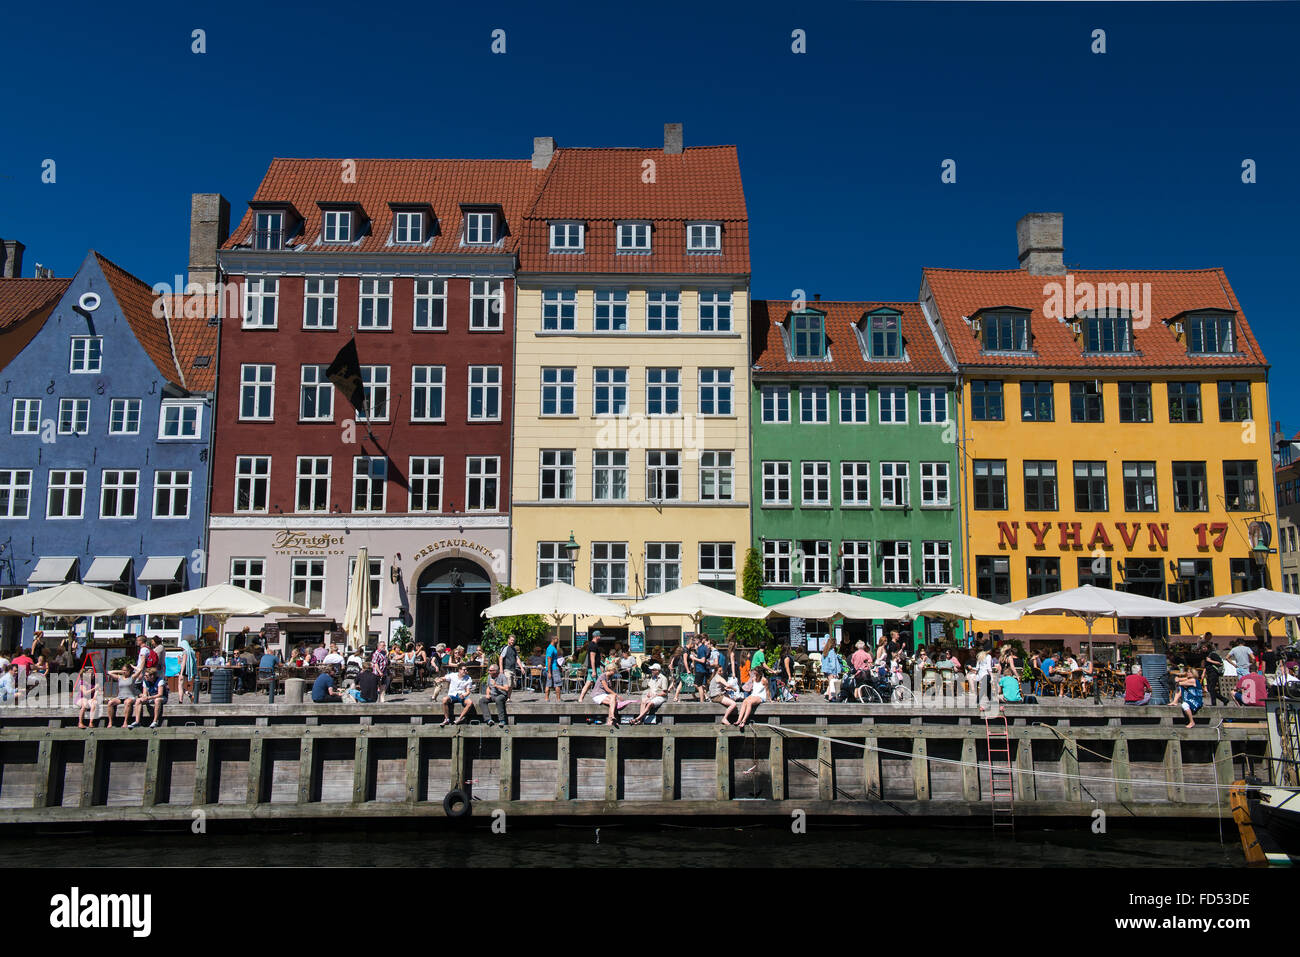 Les touristes de profiter du soleil à Nyhavn, Copenhague, destination touristique les plus populaires Banque D'Images